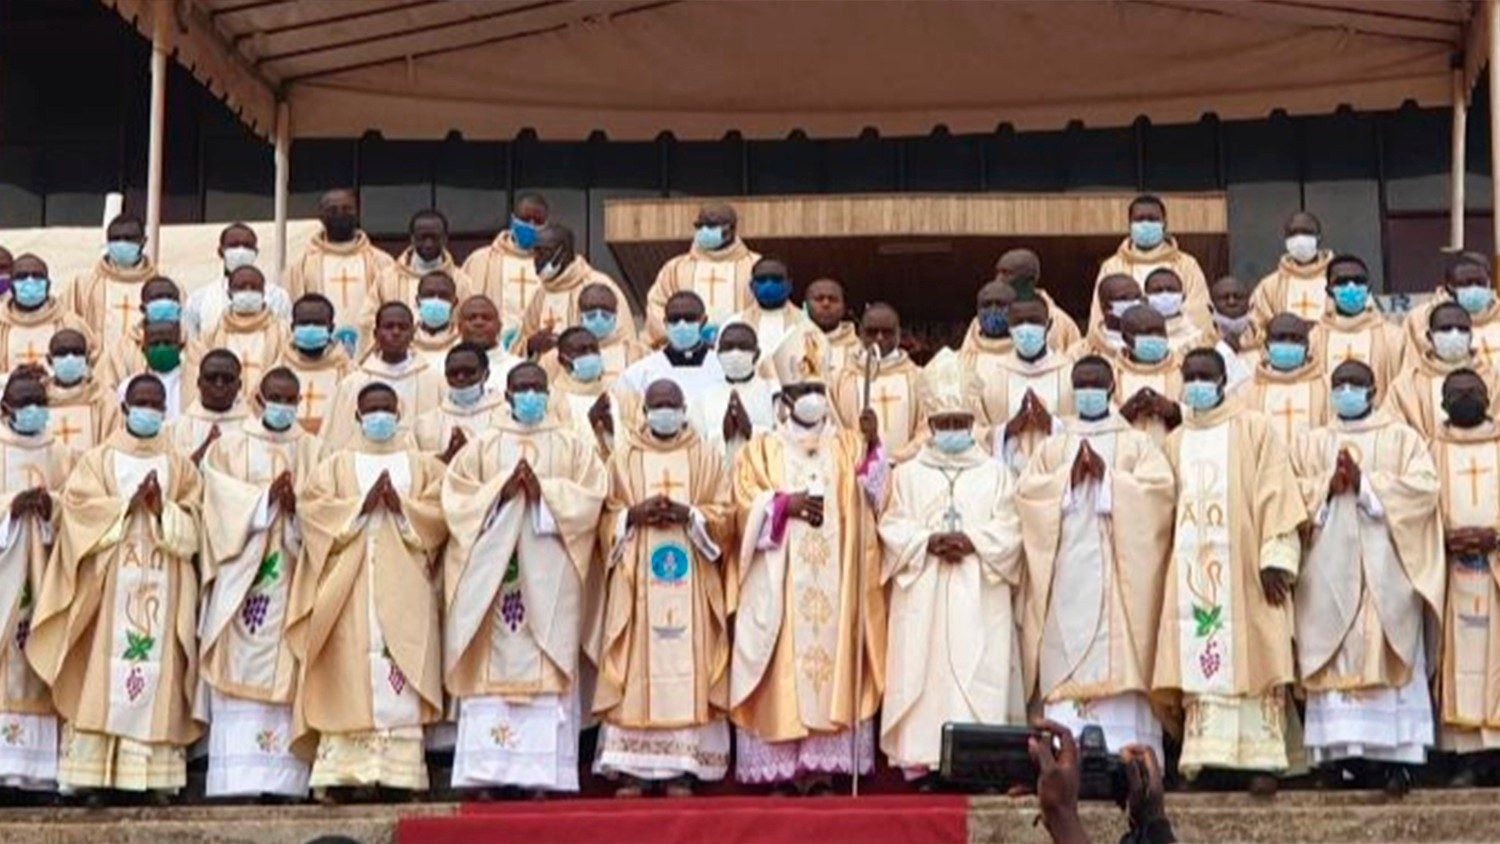 Các linh mục bị bắt cóc ở Camerun tháng trước xin giúp được tự do